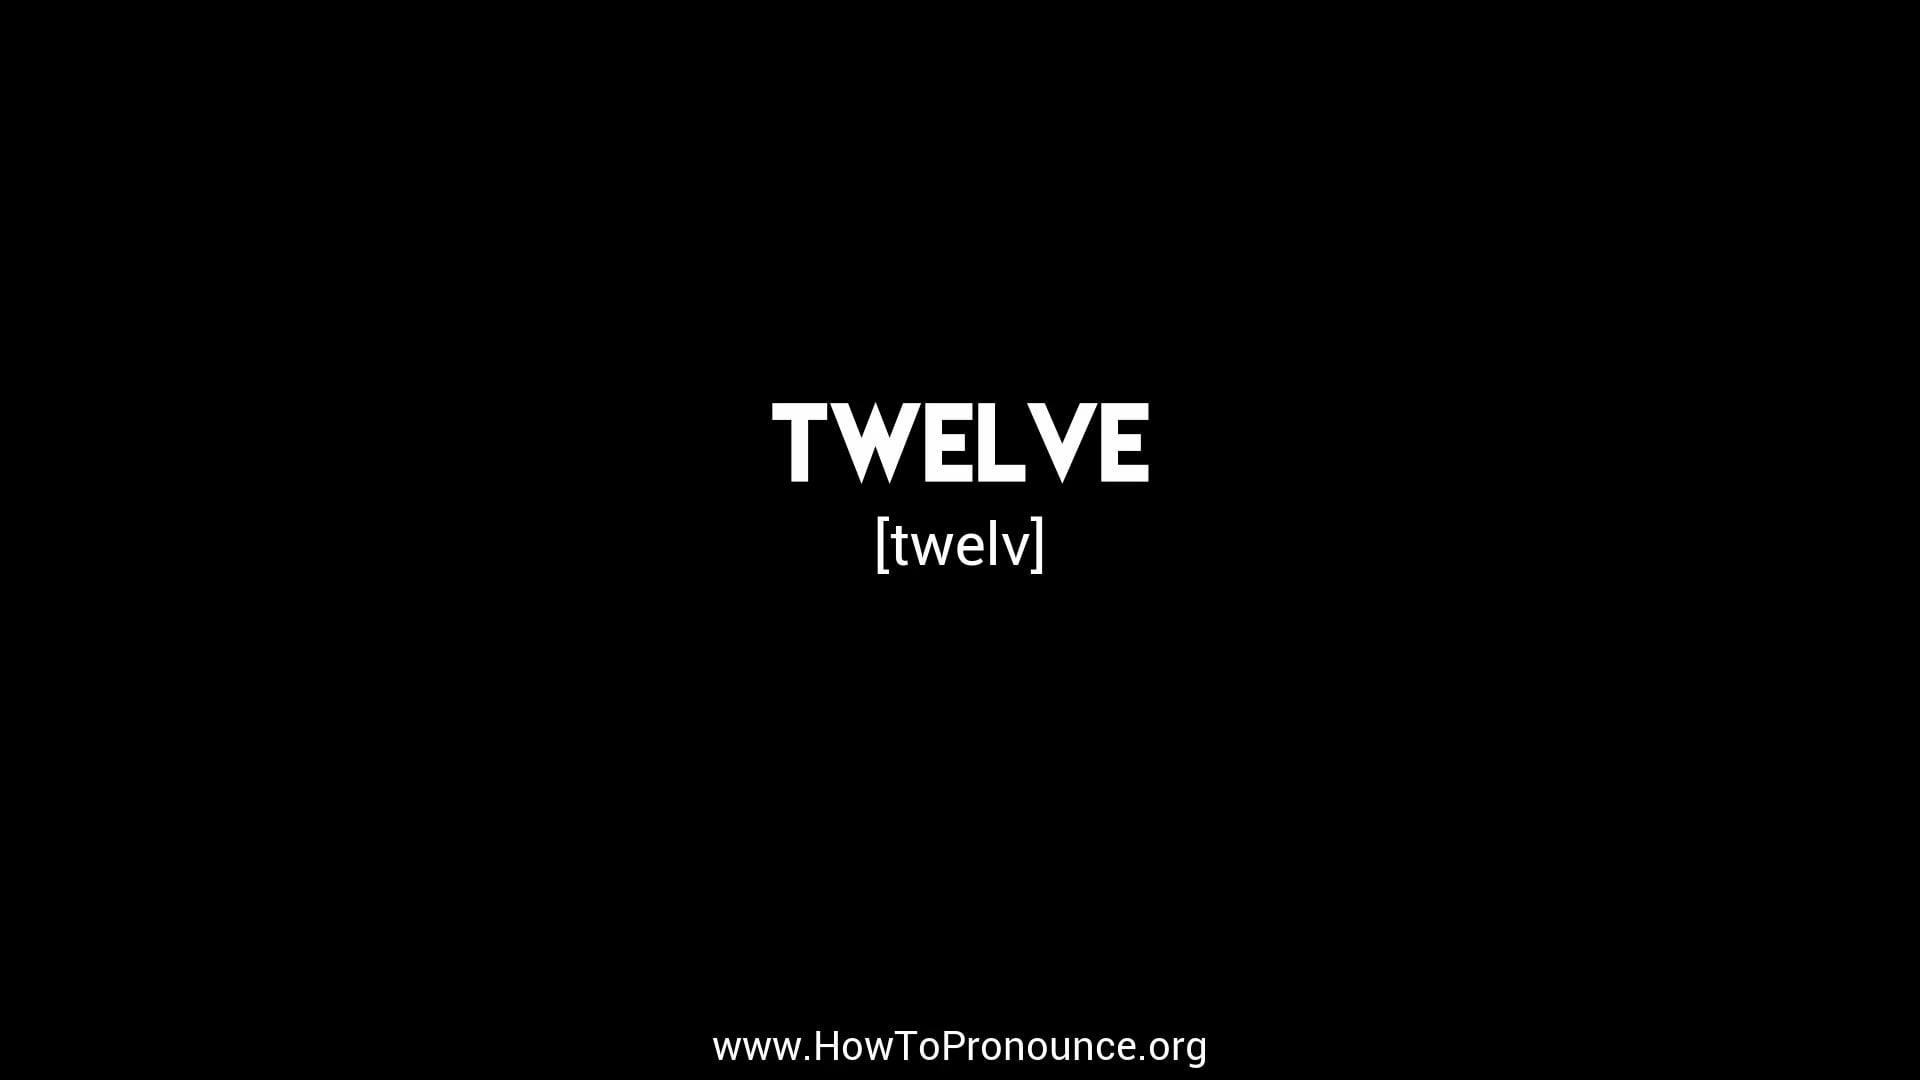 How to Pronounce twelve on Vimeo